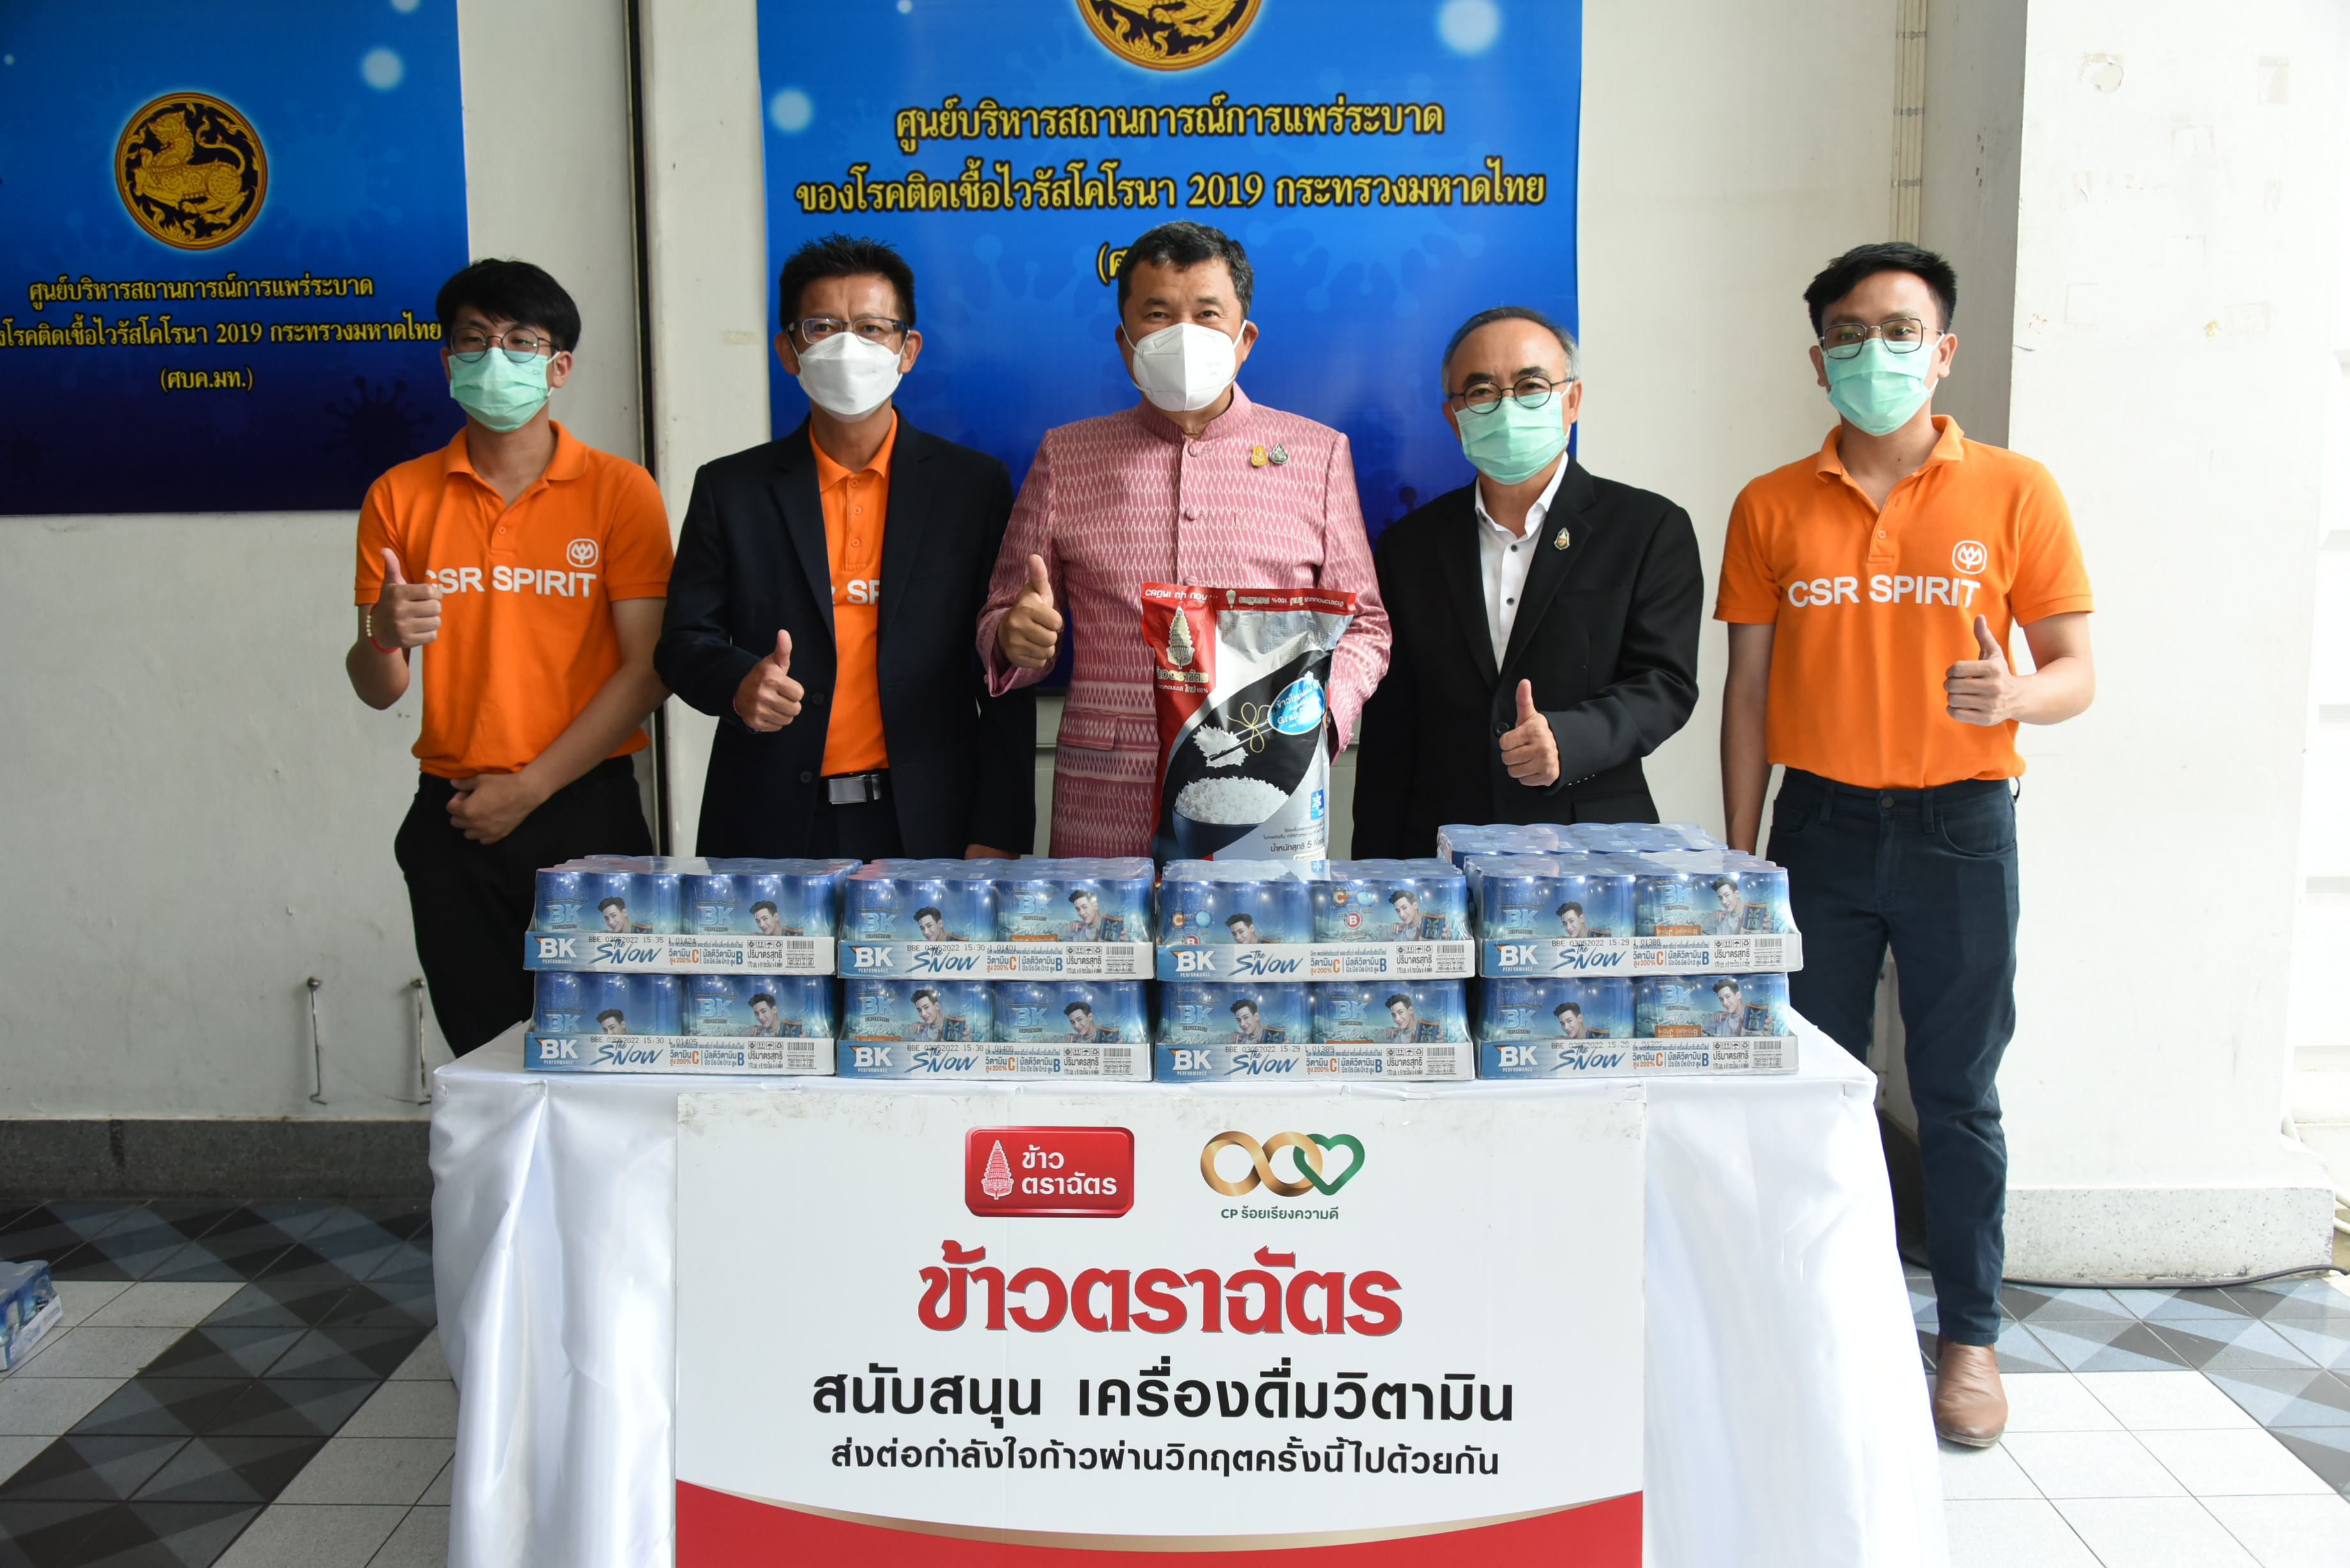 ปลัดกระทรวงมหาดไทย รับมอบเครื่องดื่ม จากเครือเจริญโภคภัณฑ์ เพื่อสนับสนุนภารกิจด้านการการช่วยเหลือประชาชน